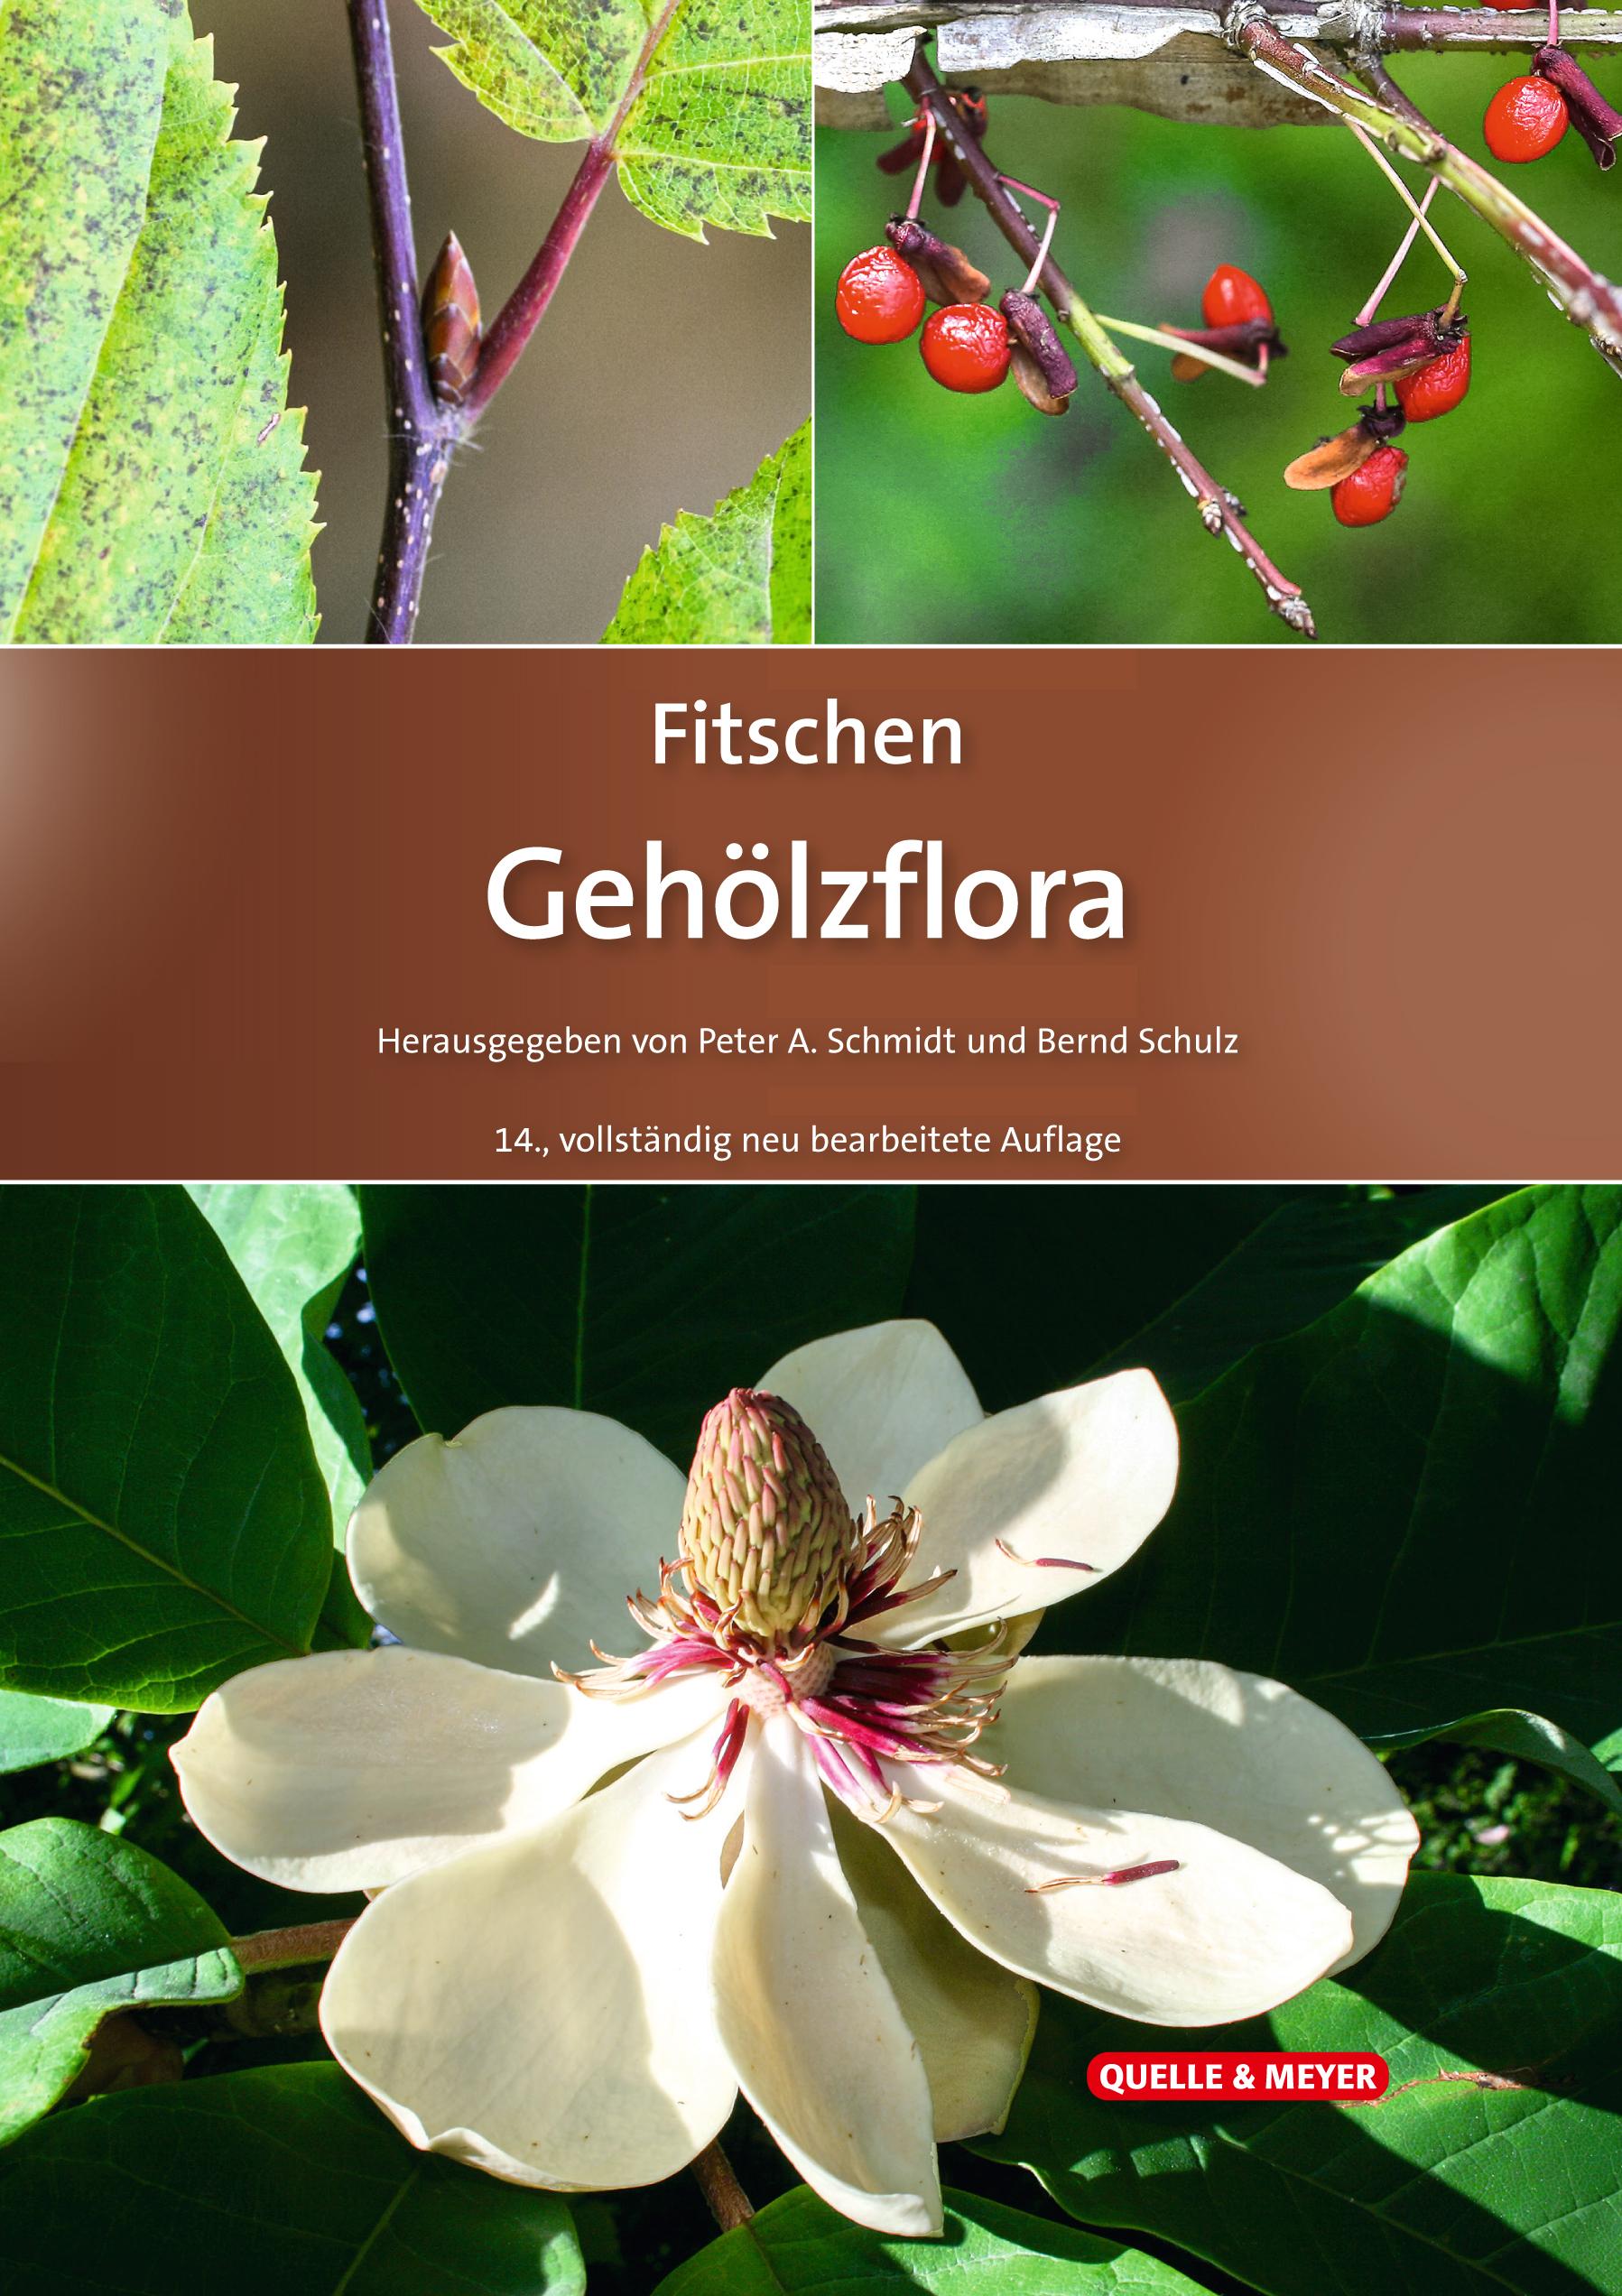 Fitschen - Gehölzflora Ein Buch zum Bestimmen der in Mitteleuropa wild wachsenden und angepflanzten Bäume und Sträucher